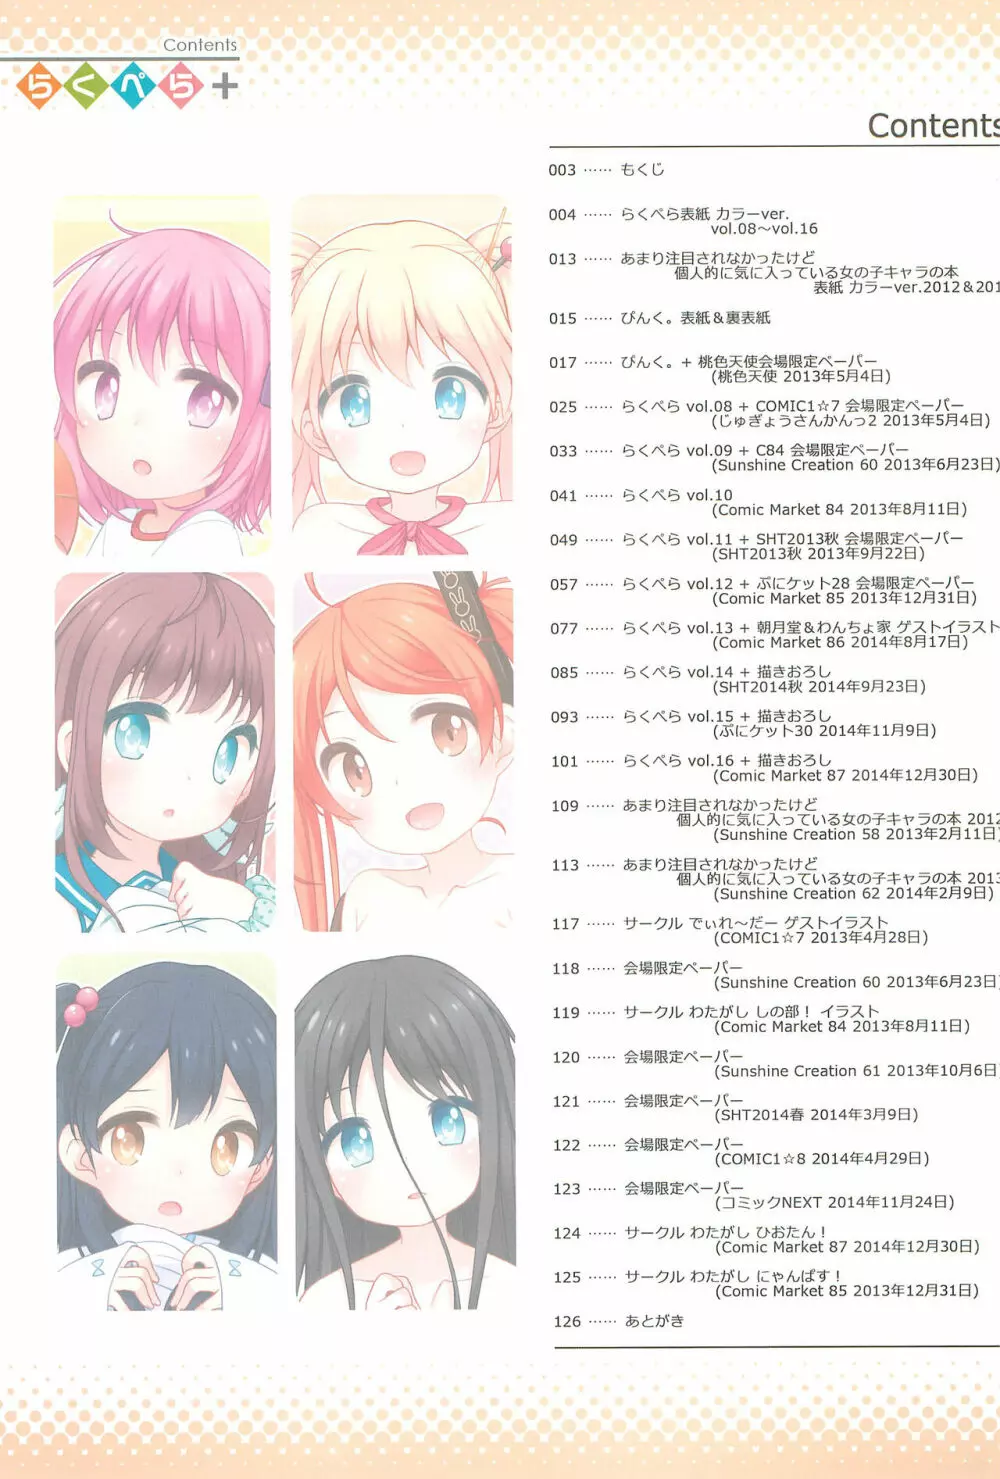 らくぺら+ 2013-2014 - page3